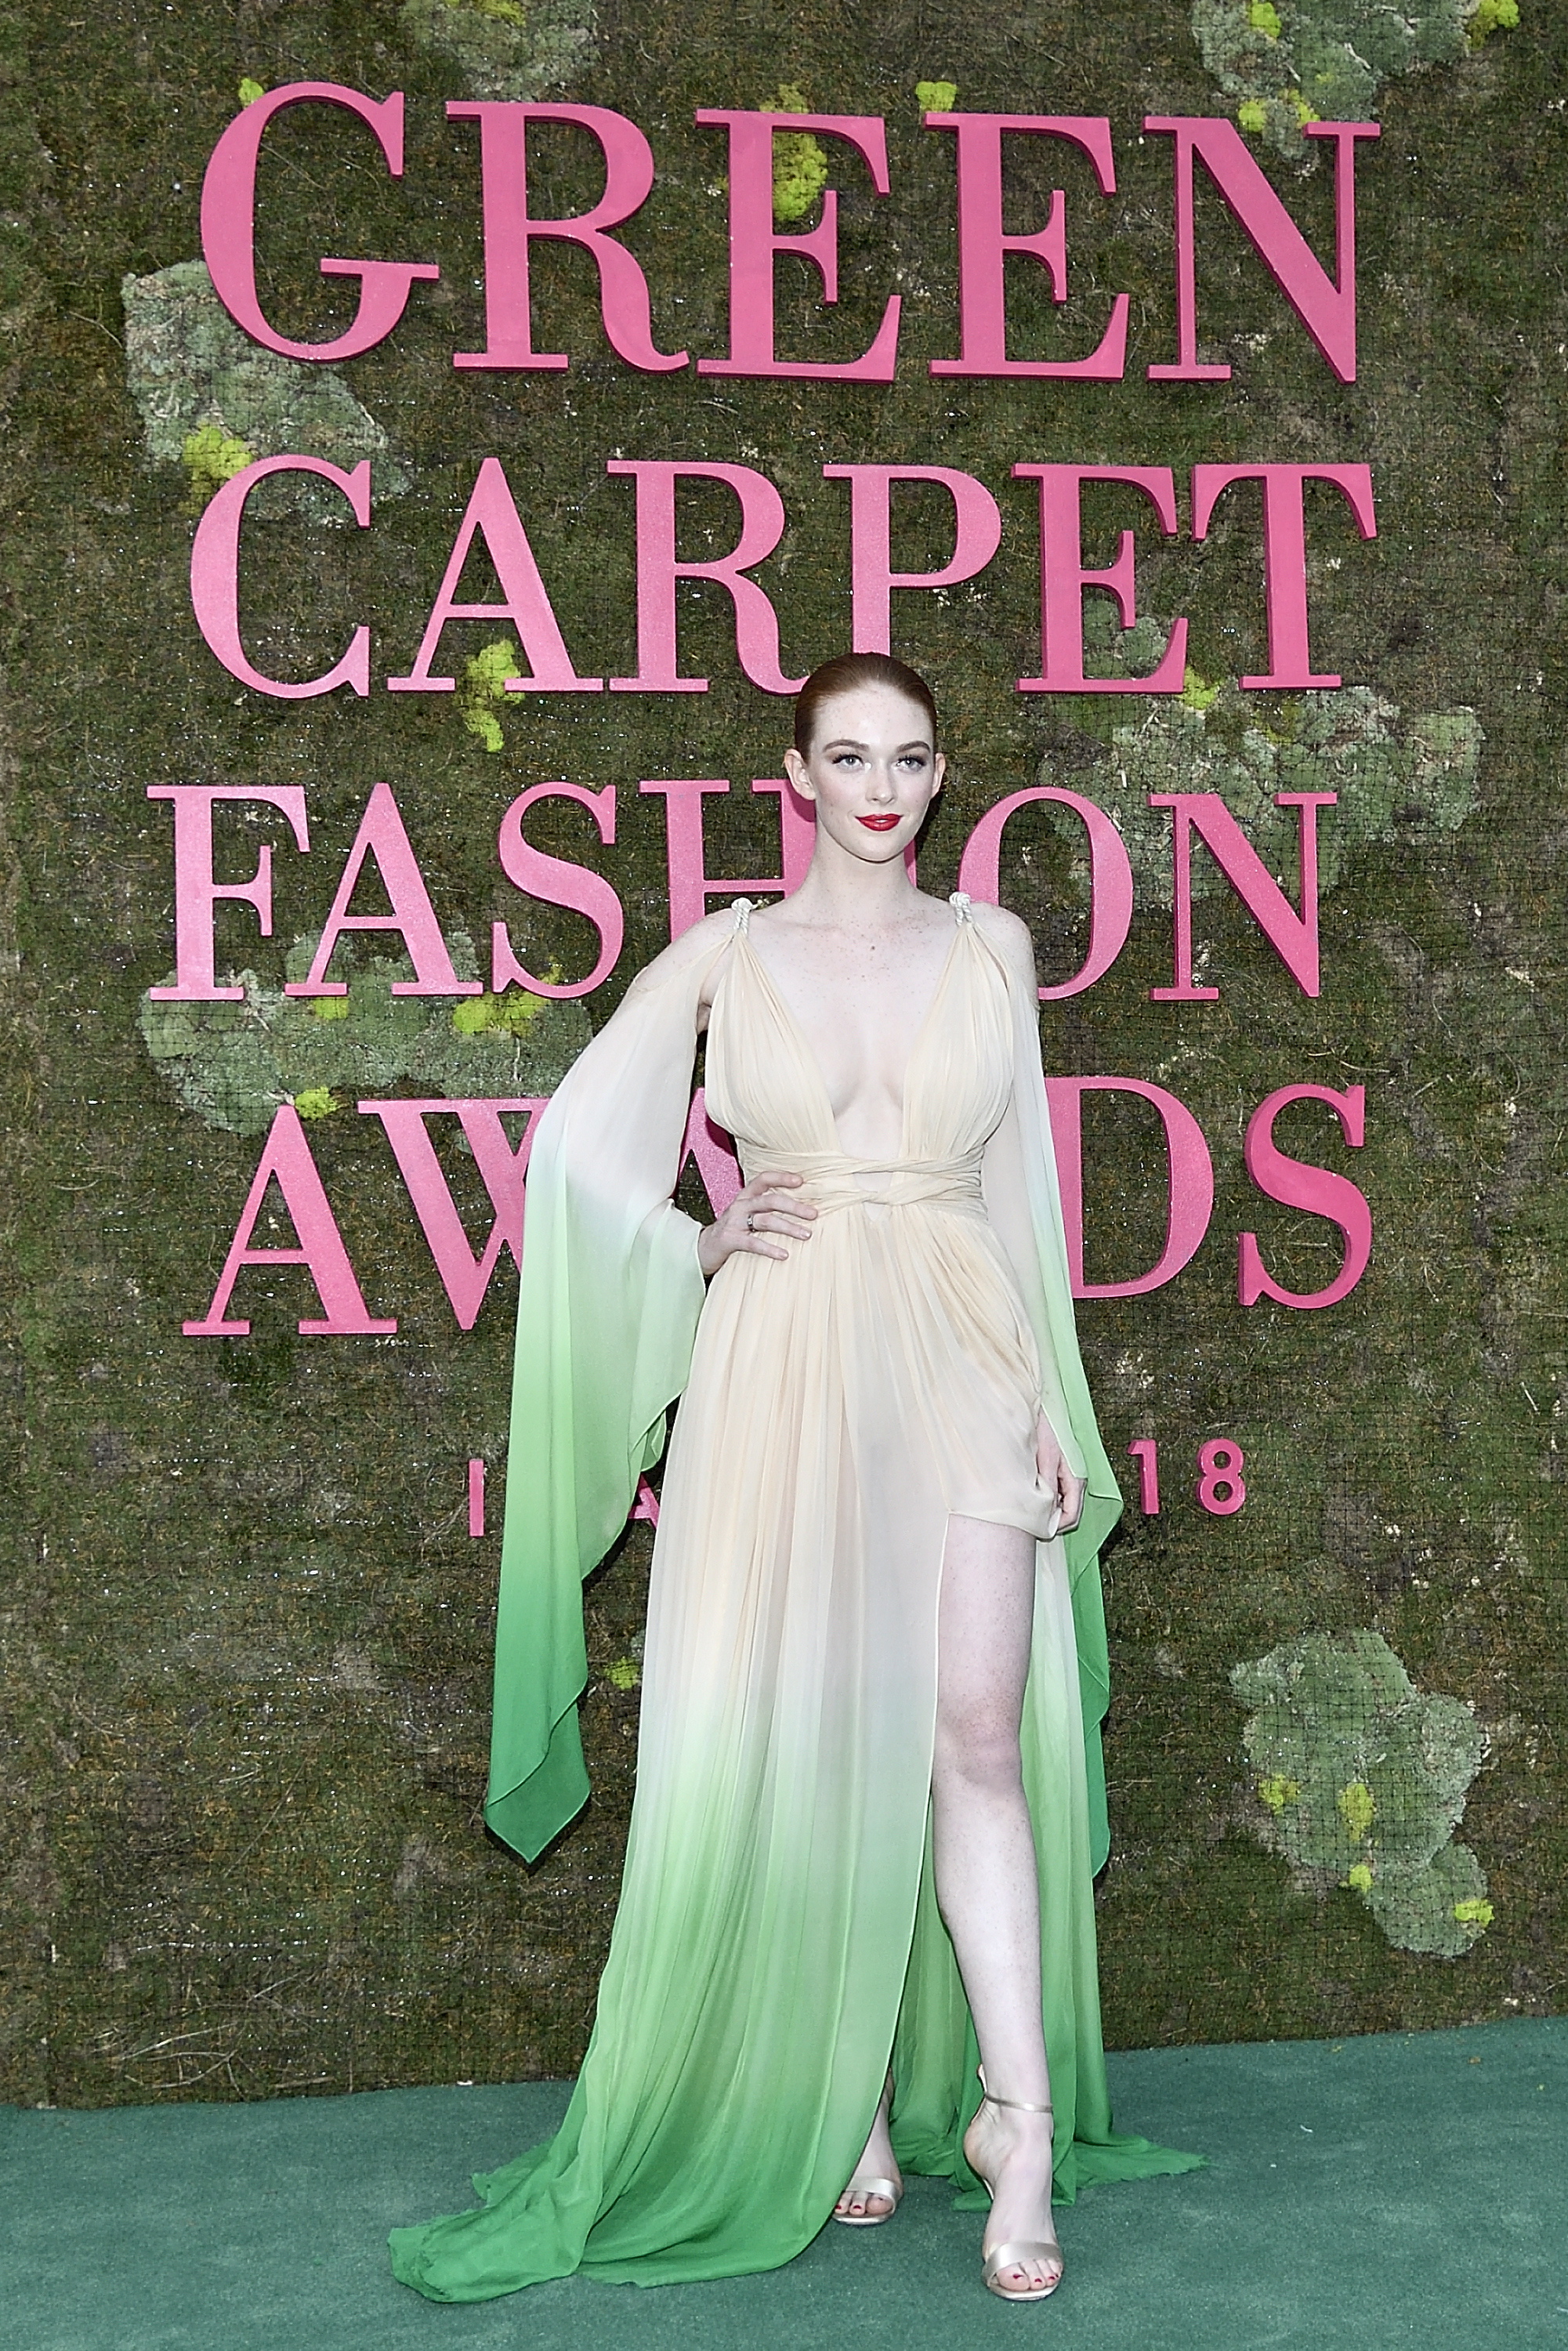 larsen-thompson-green-carpet-fashion-awards-in-milan-92318-5.jpg